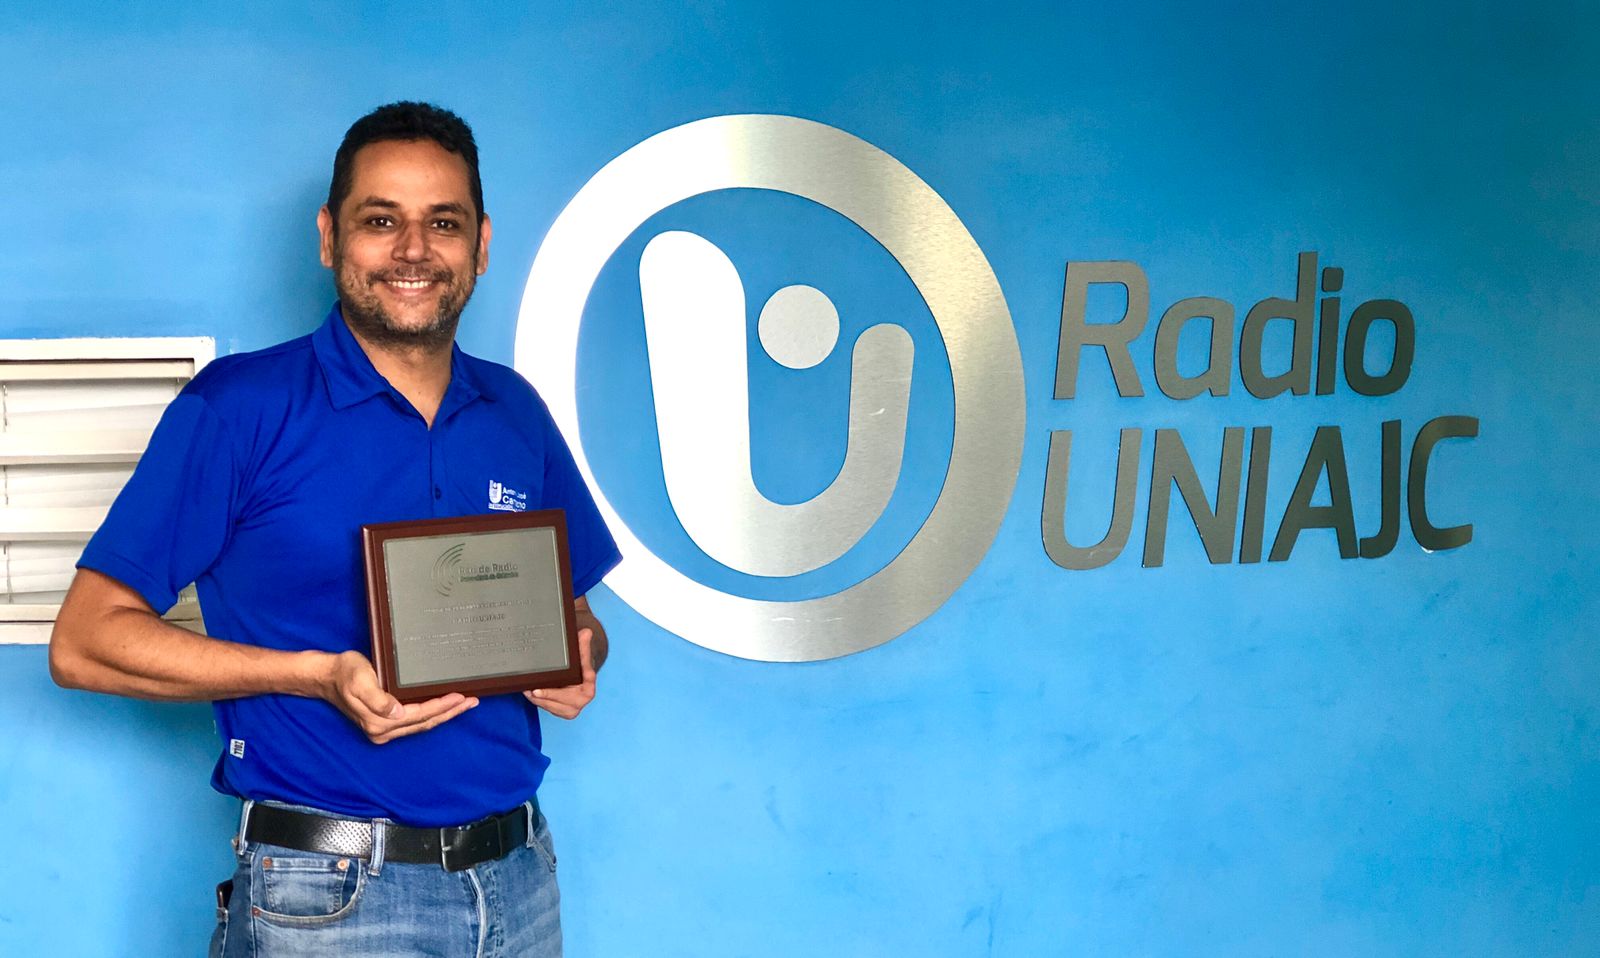 RadioUNIAJC recibe reconocimiento por sus 10 años de trayectoria